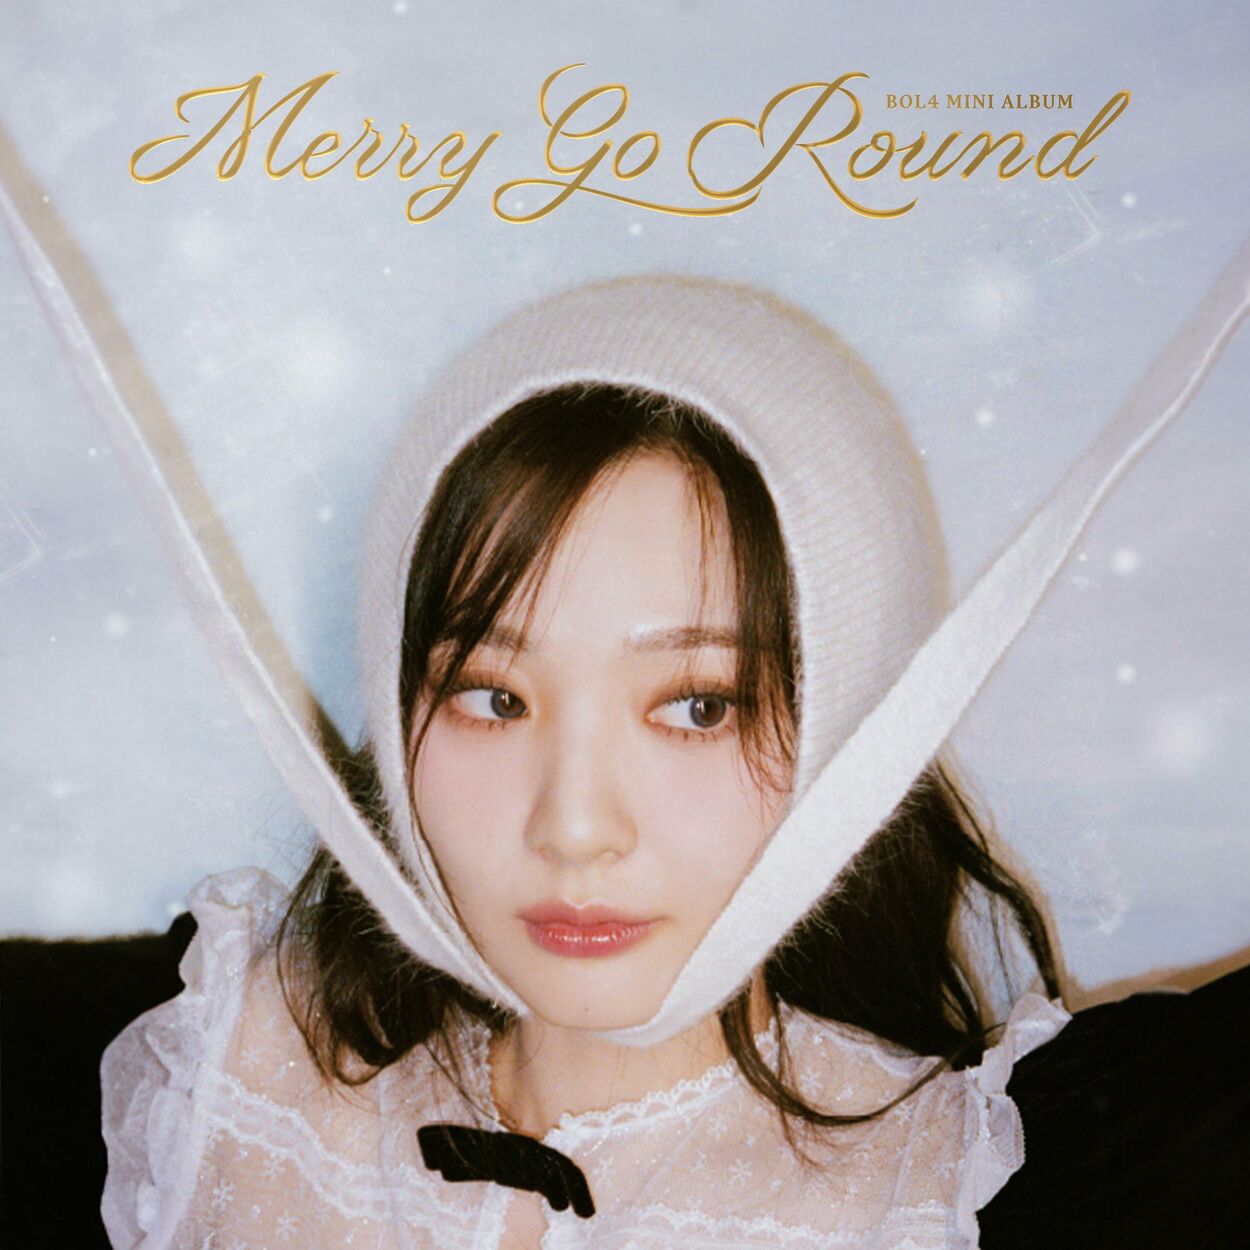 BOL4 – Merry Go Round – EP